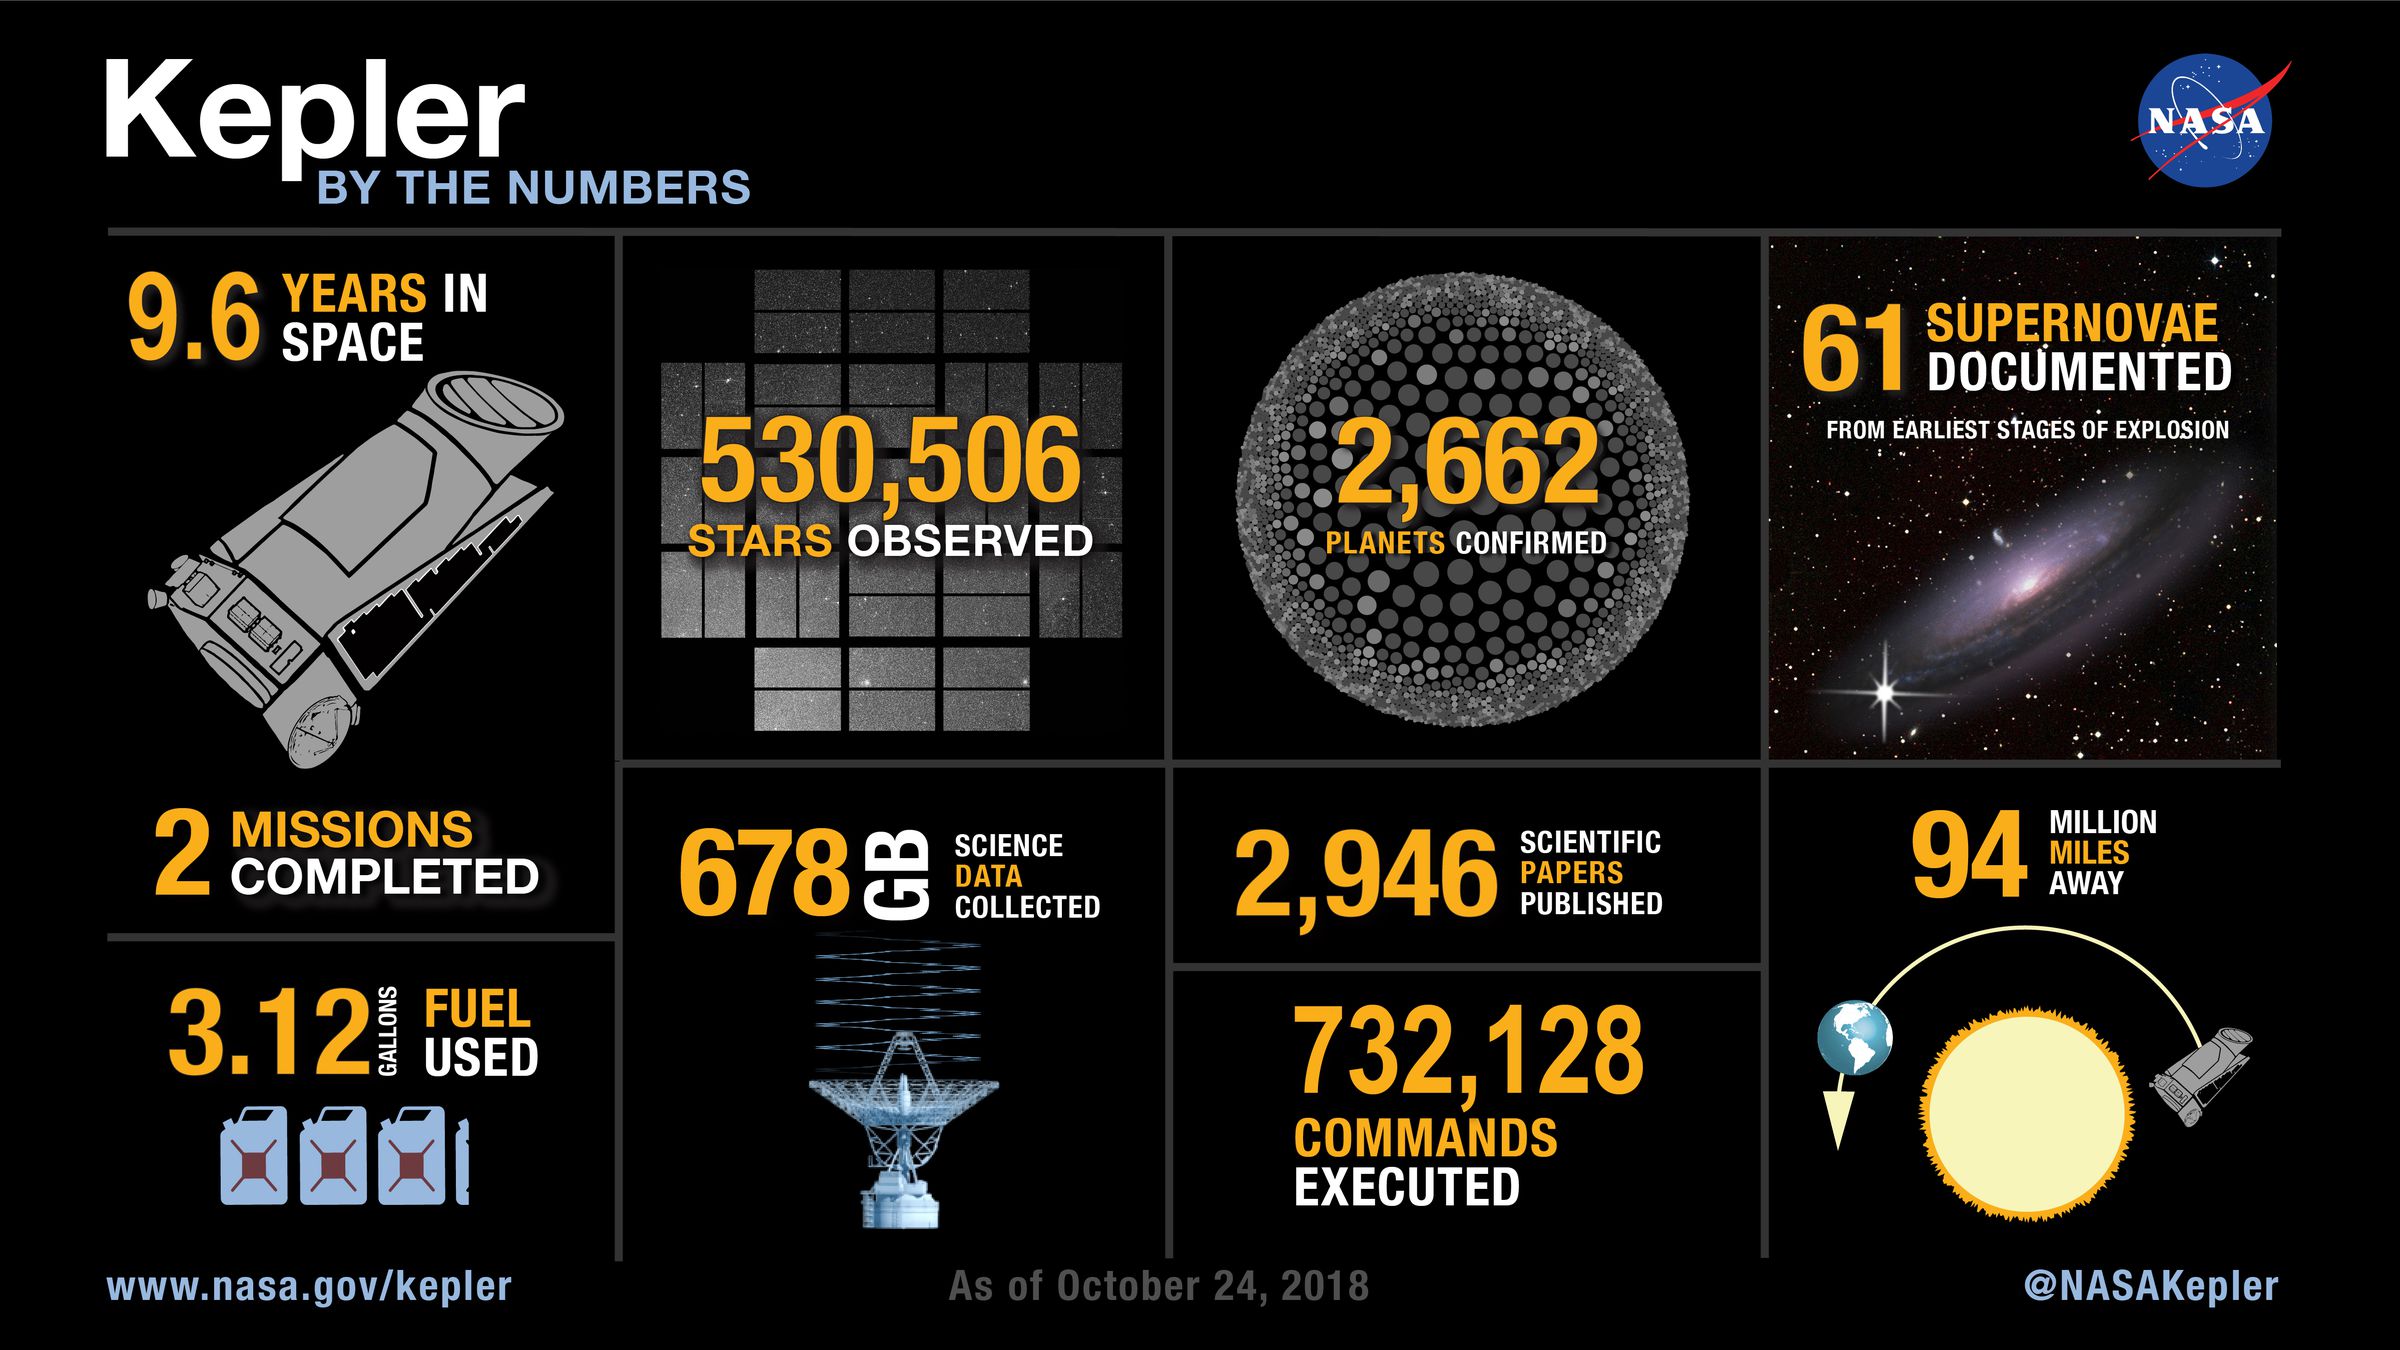 statistics about Kepler